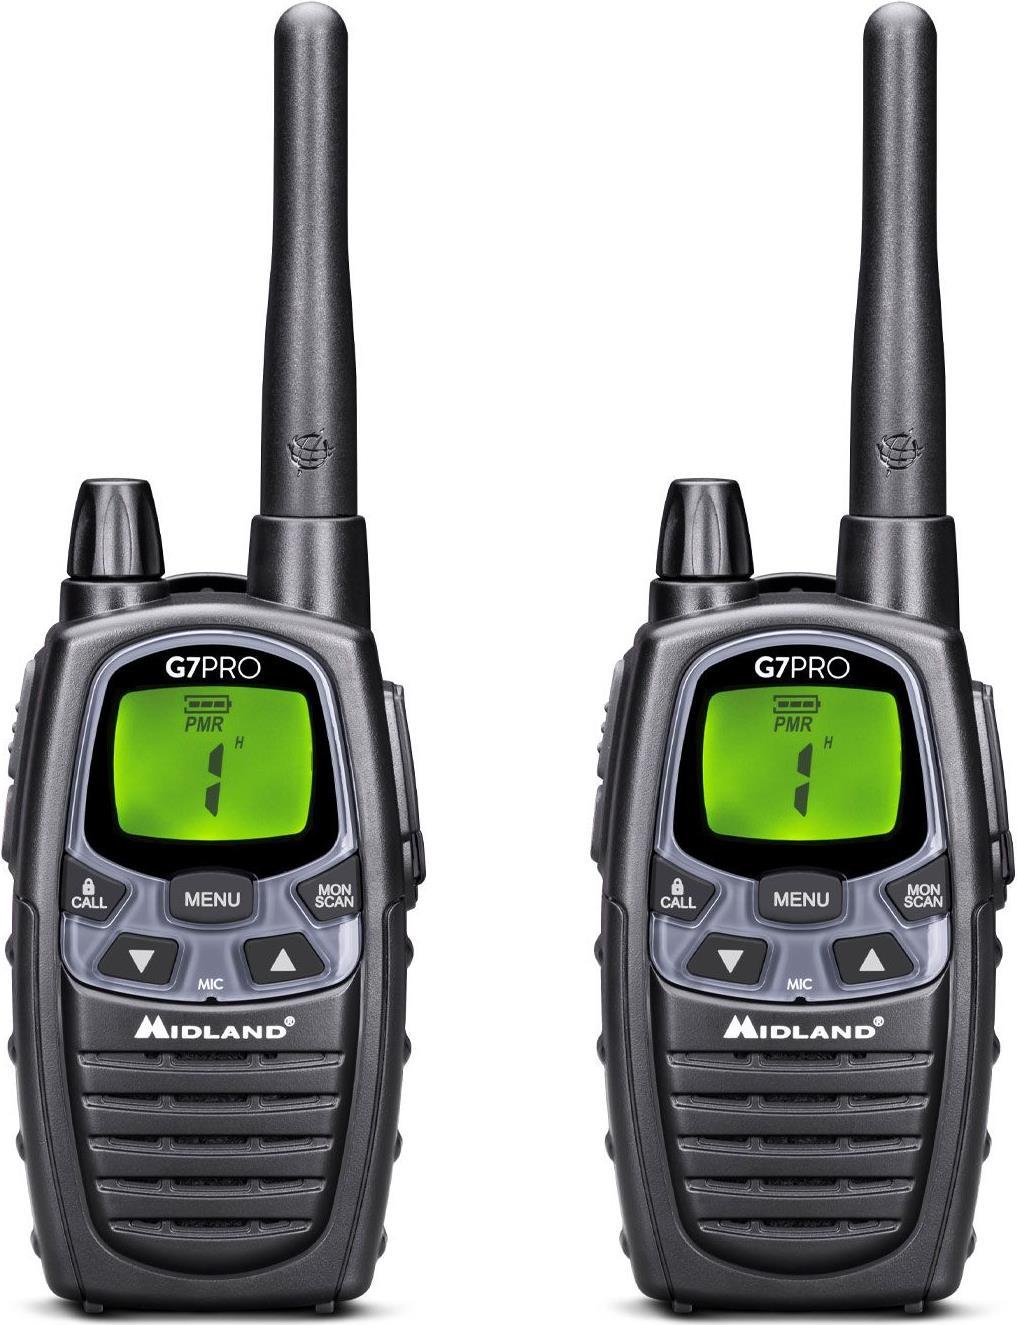 Midland G7 Pro Walkie Talkie Funksprechgerät 69 Kanäle 446.00625 - 446.09375 MHz Schwarz (C1090.13) von Midland